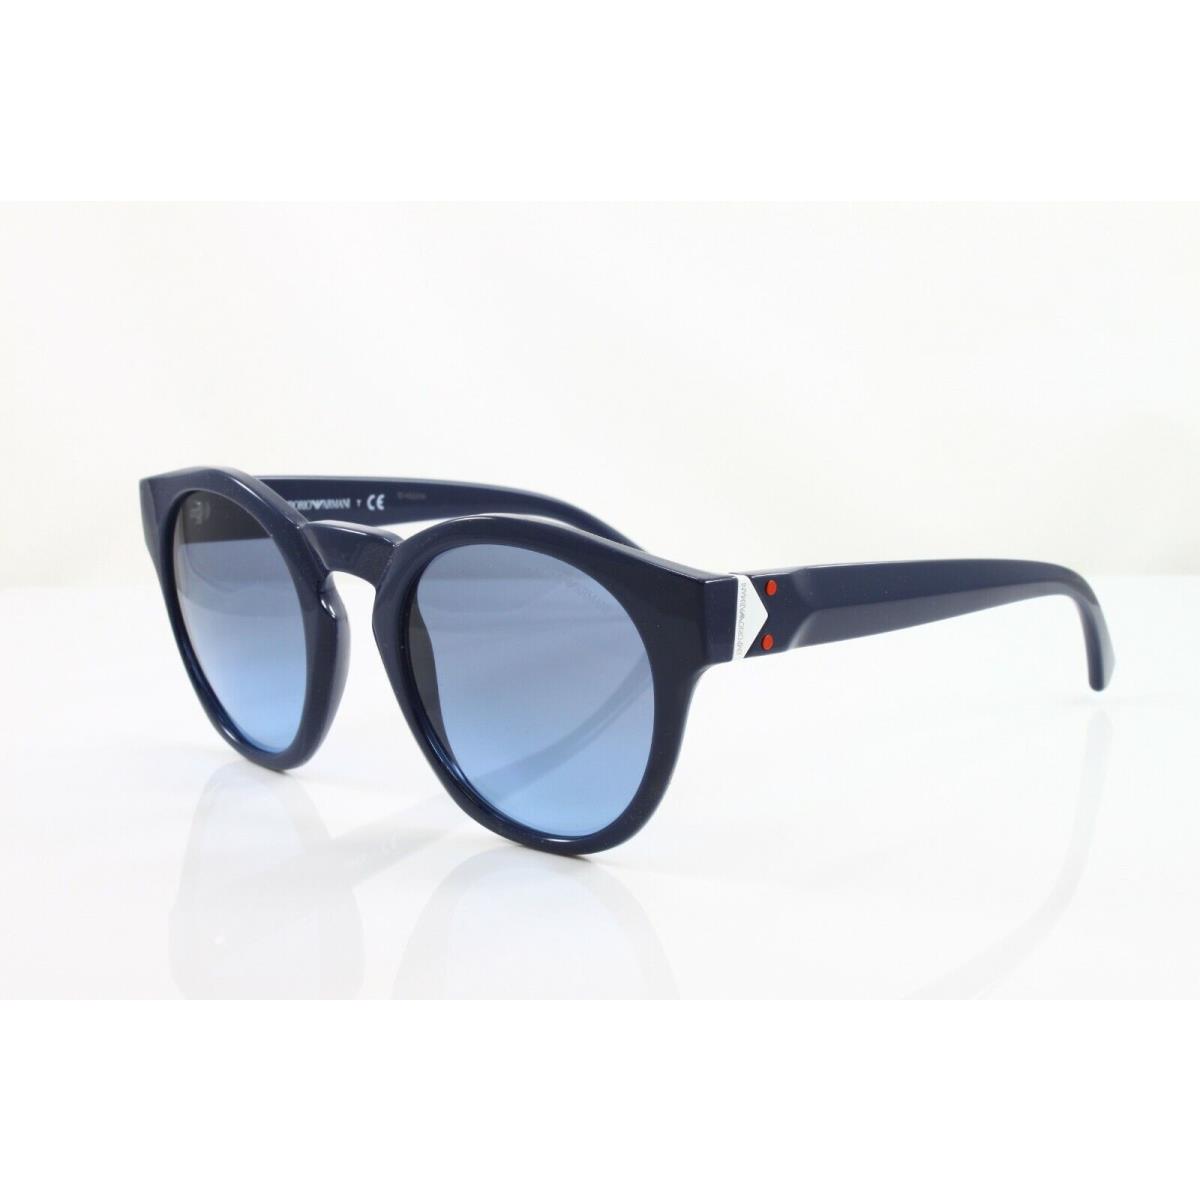 Emporio Armani sunglasses  - Blue Frame, Blue Lens 0